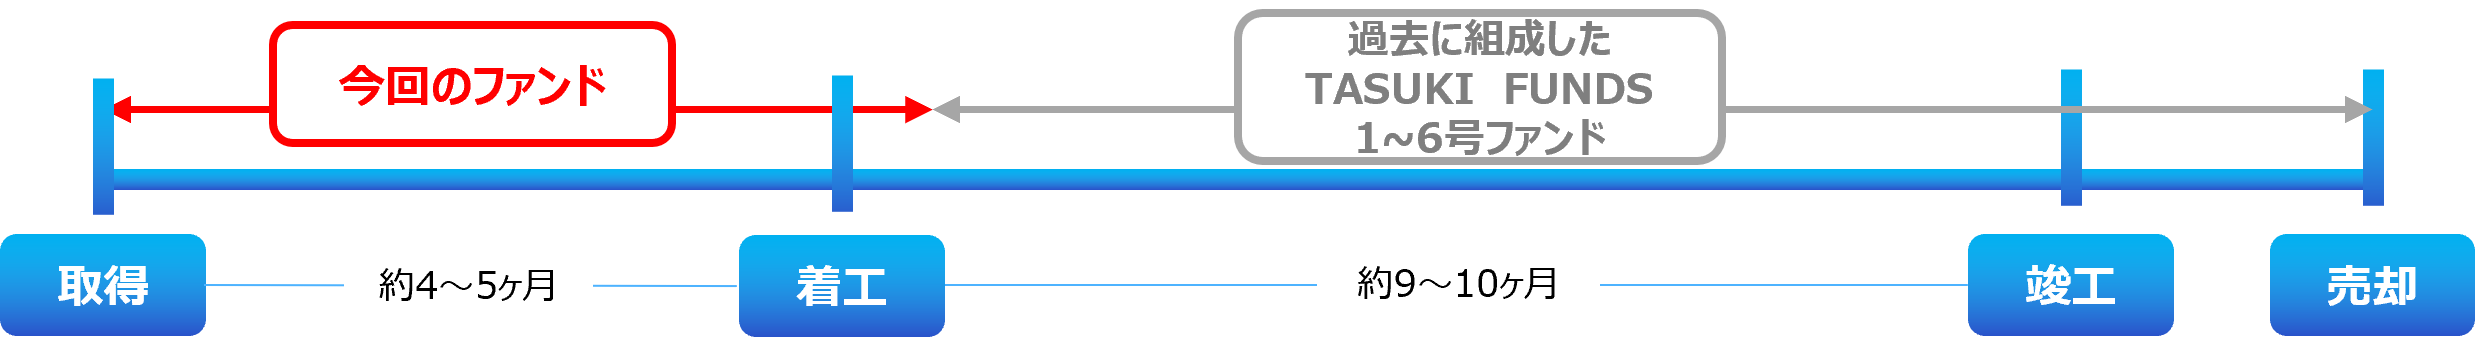 不動産投資型クラウドファンディング「TASUKI FUNDS」タスキ キャピタル重視型 第8号ファンド#1の投資募集のお知らせのサブ画像2